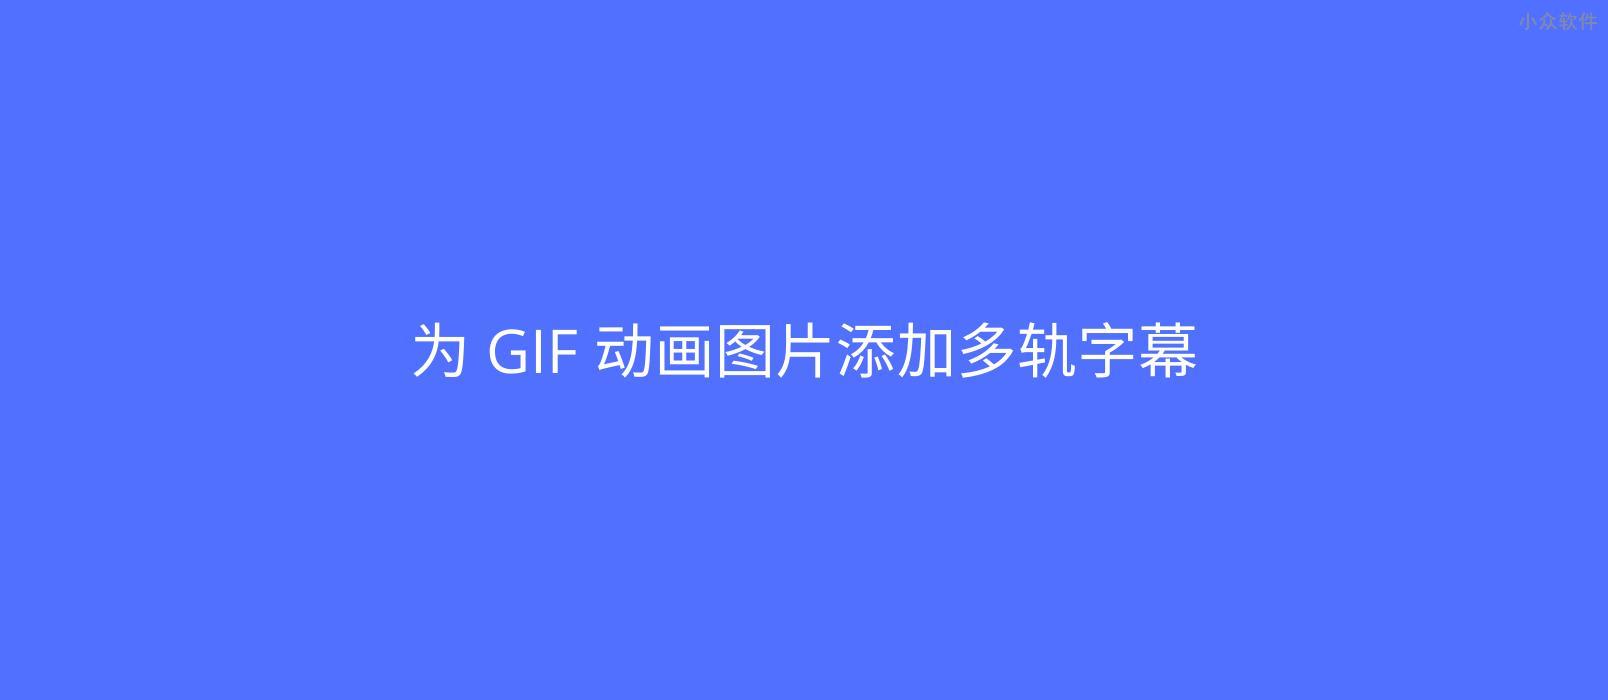 应景图 GIF字幕 - 在线为 GIF 动画添加字幕 1